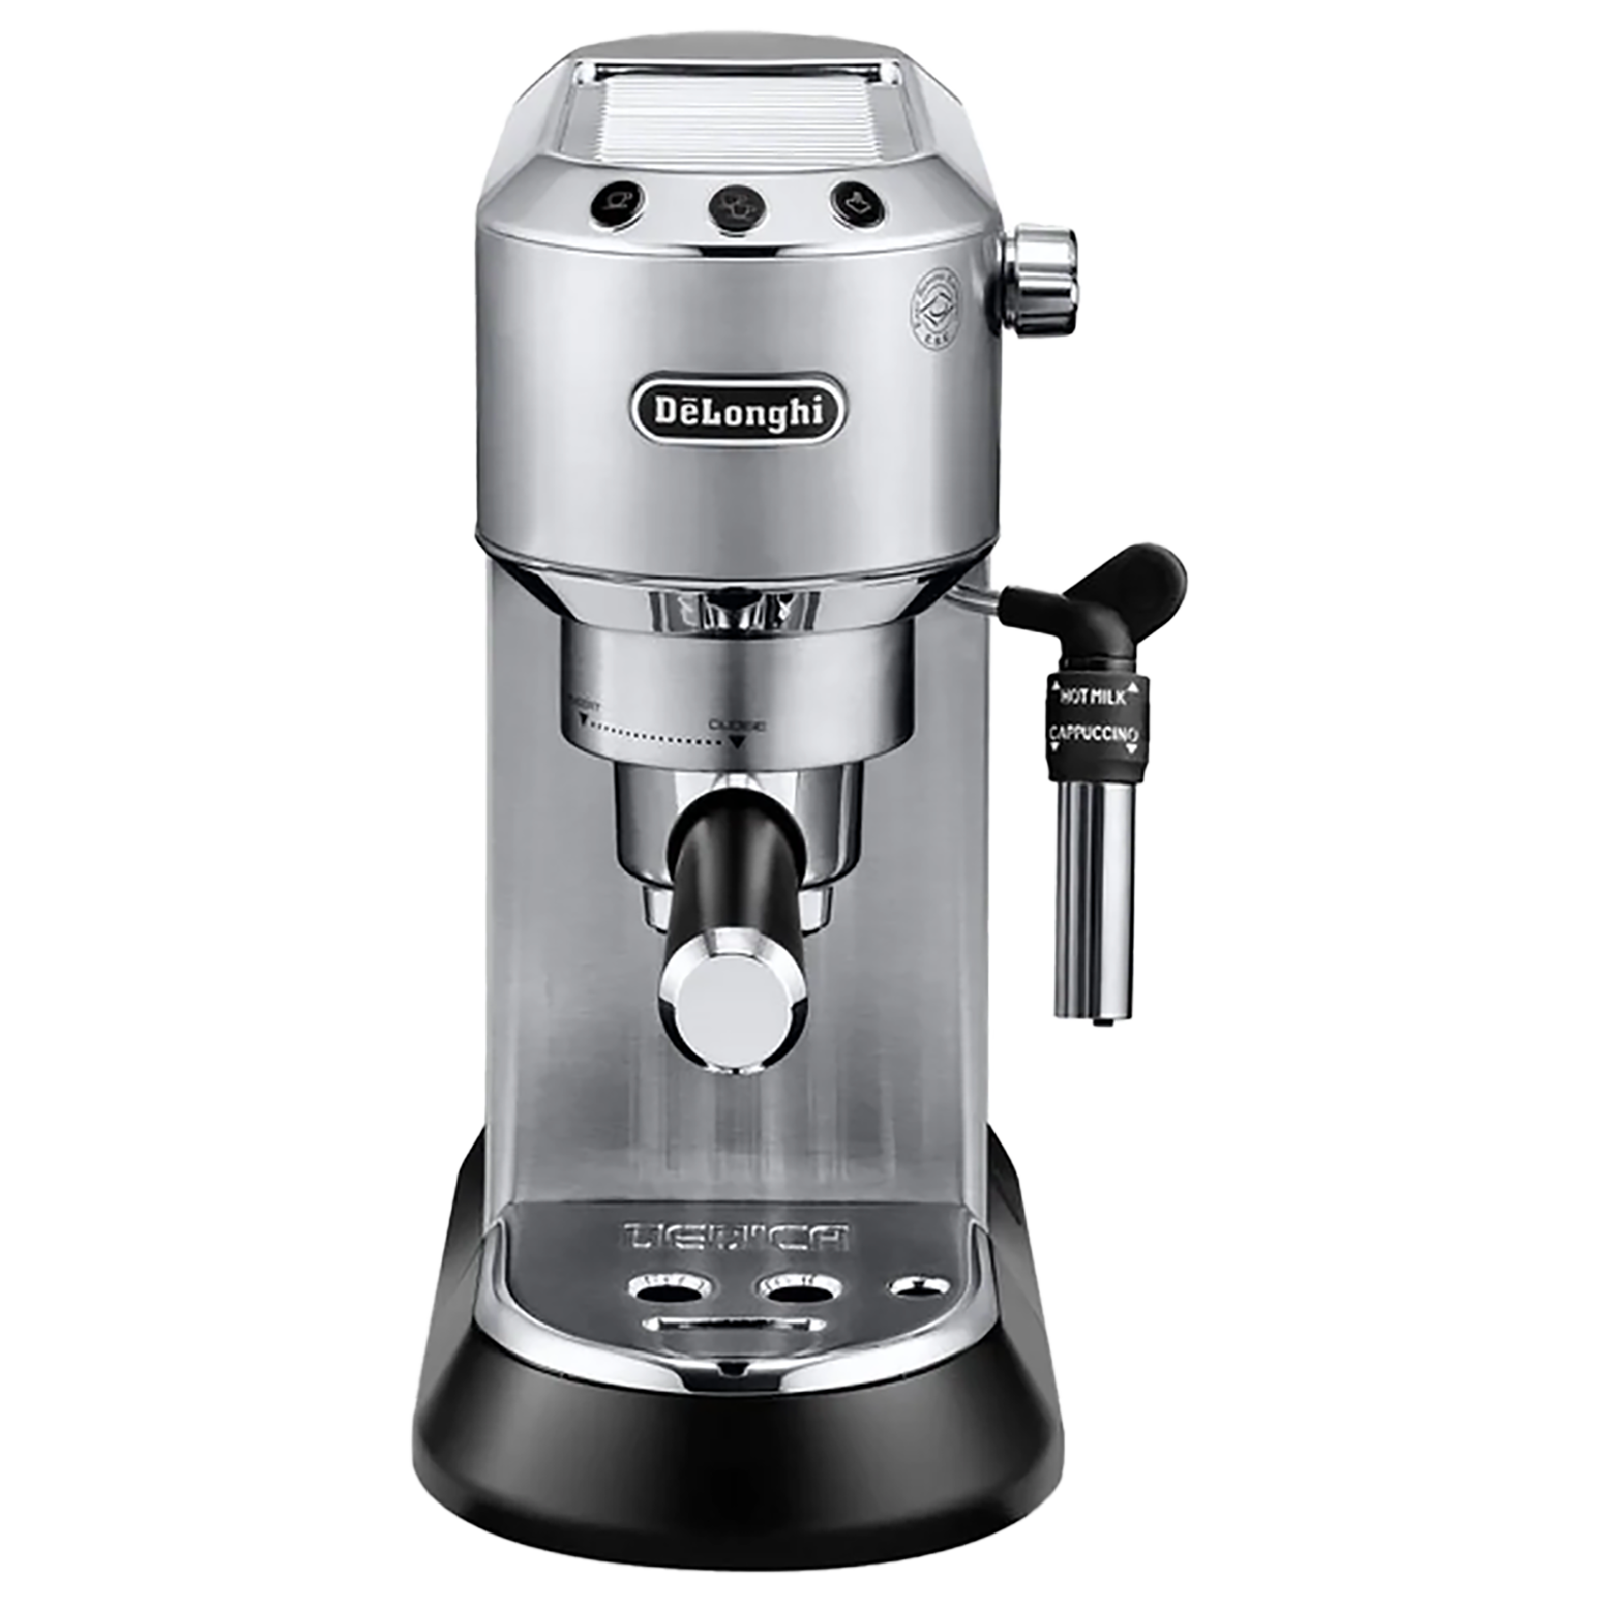 DeLonghi Pump Espresso 2 Cups Semi-Automatic Coffee Maker (Makes Expresso and Cappuccino Coffee, EC685M, Metallic)_1